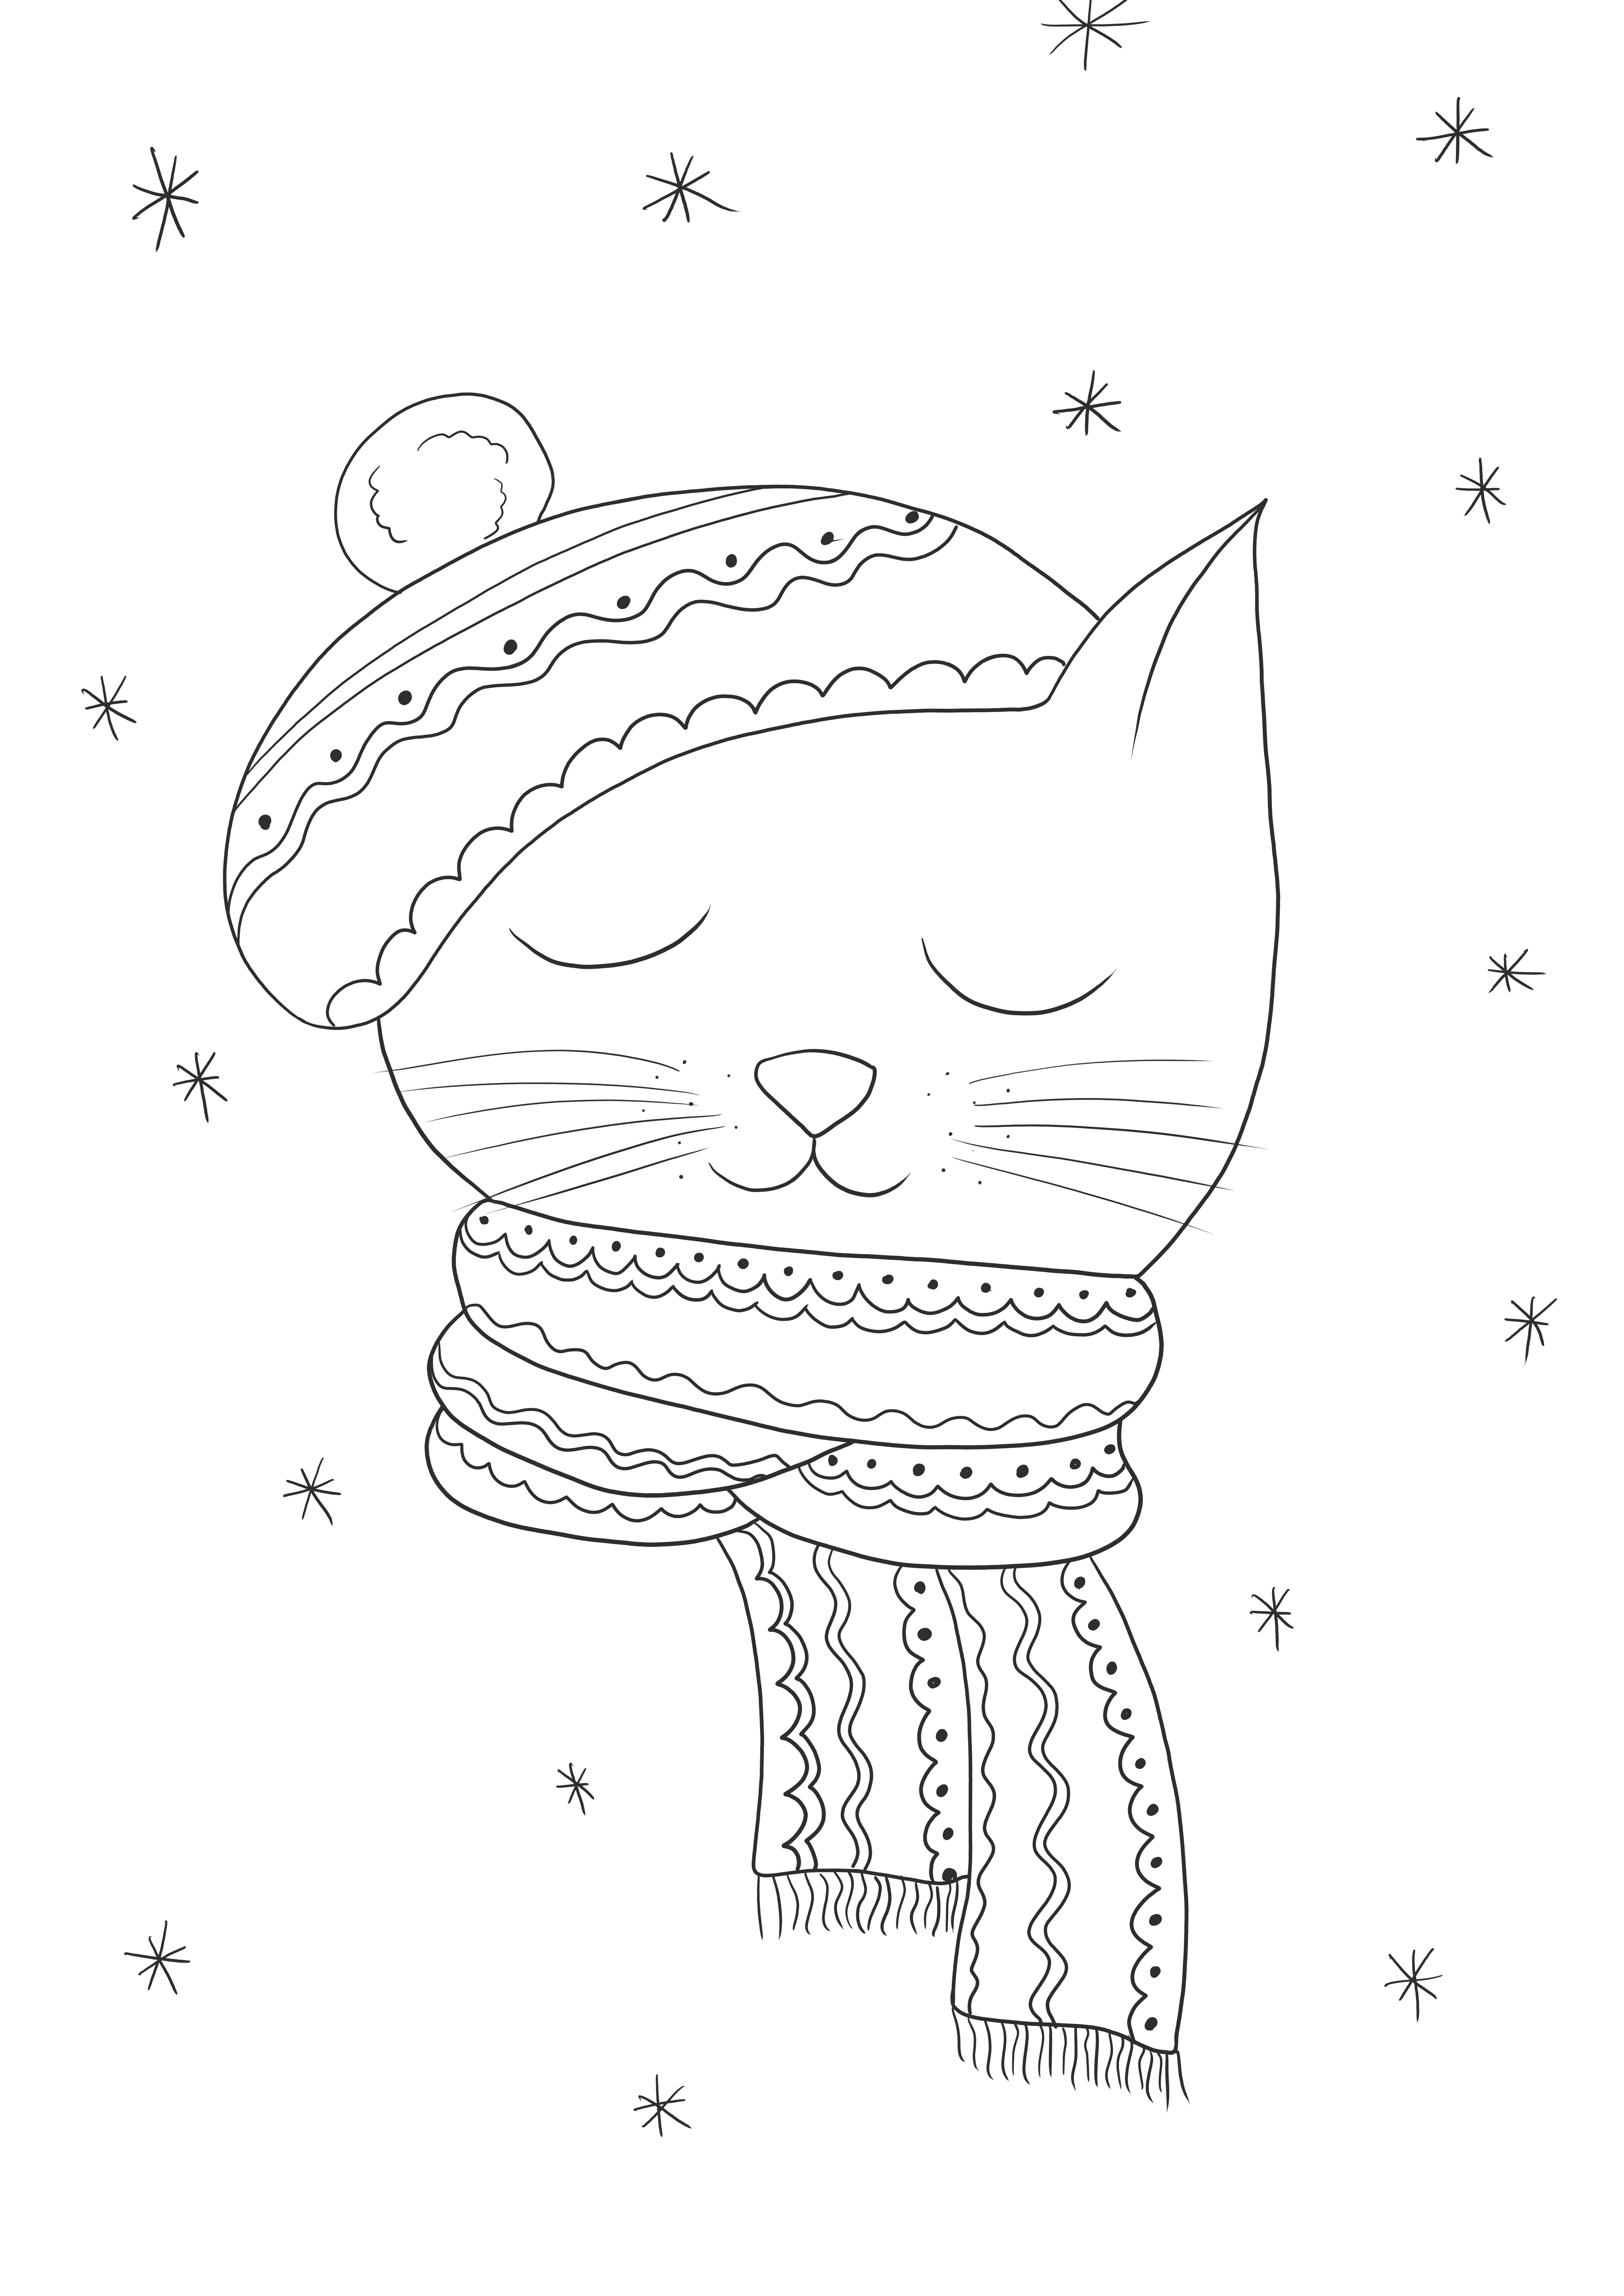 Kış kedisi-çocuklar için kolay boyama için ücretsiz yazdırılabilir